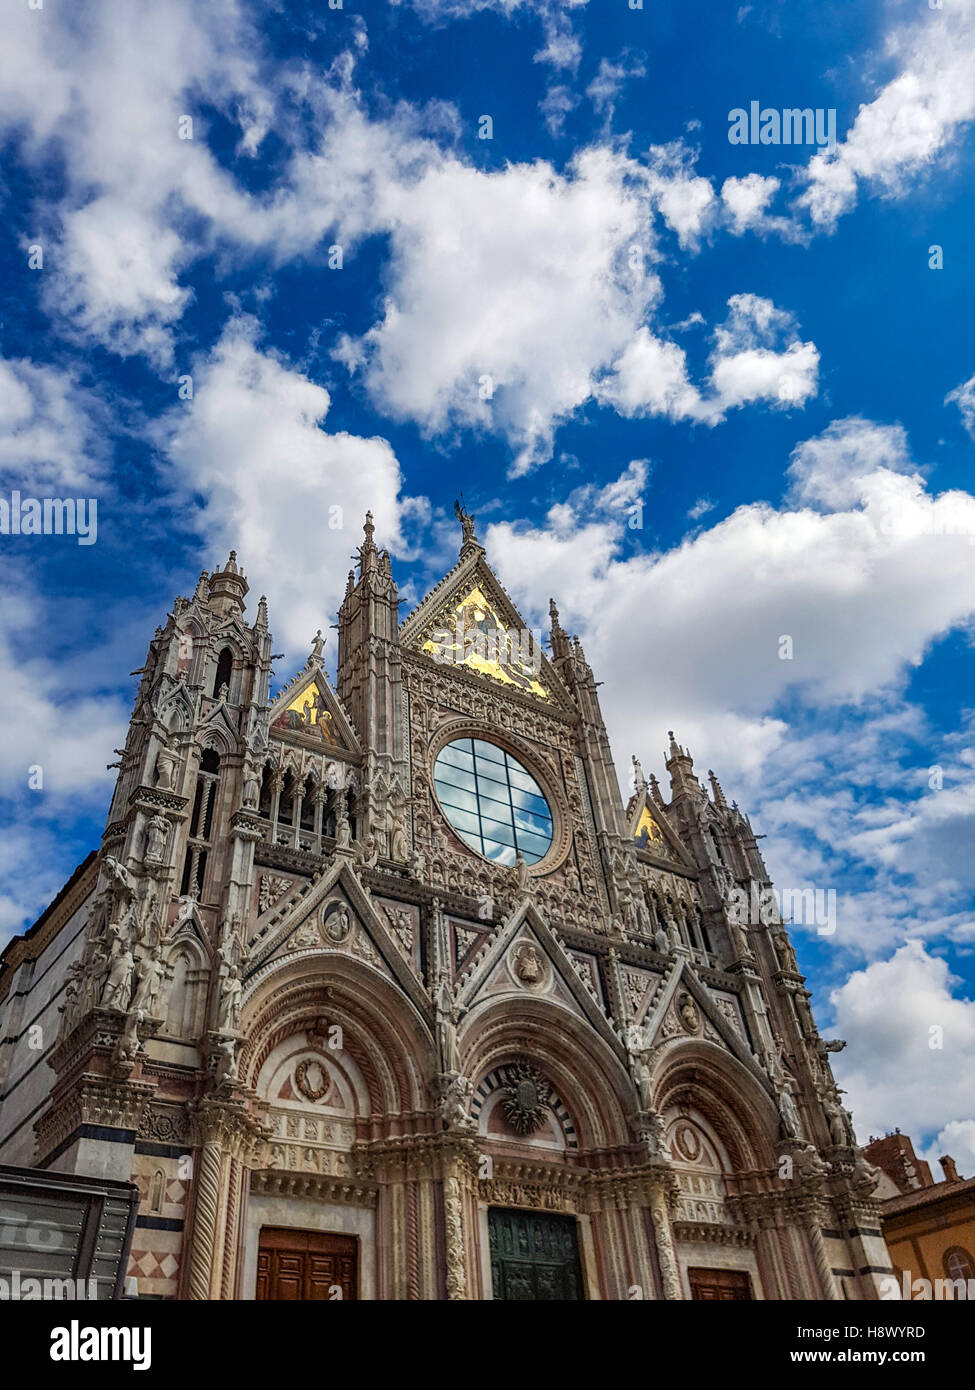 Esterni ed i dettagli architettonici del Duomo, Cattedrale di Siena, Italia Foto Stock